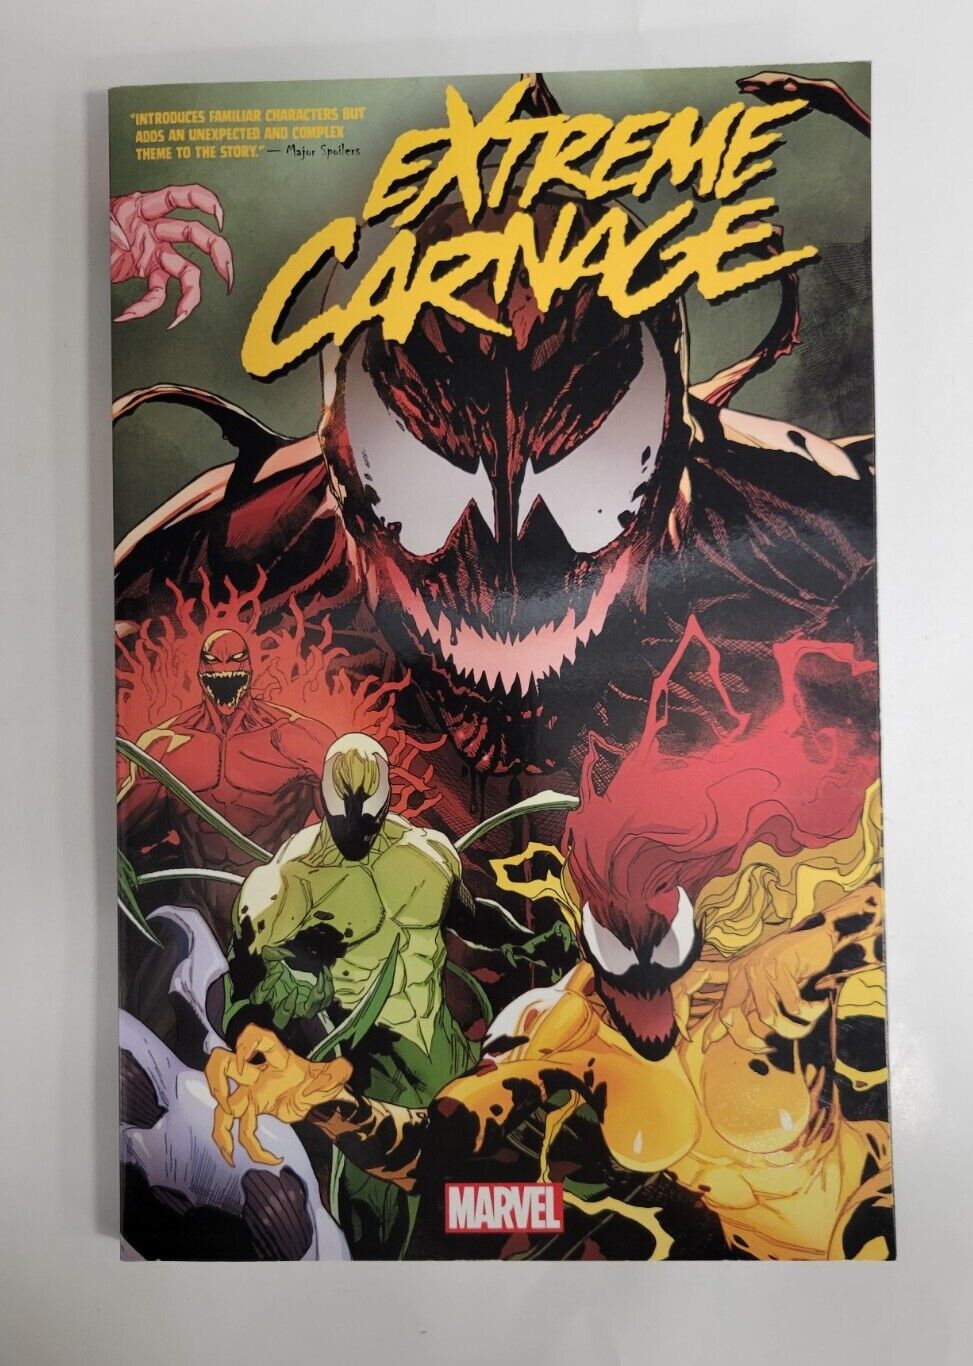 Marvel - EXTREME CARNAGE - Graphic Novel TPB